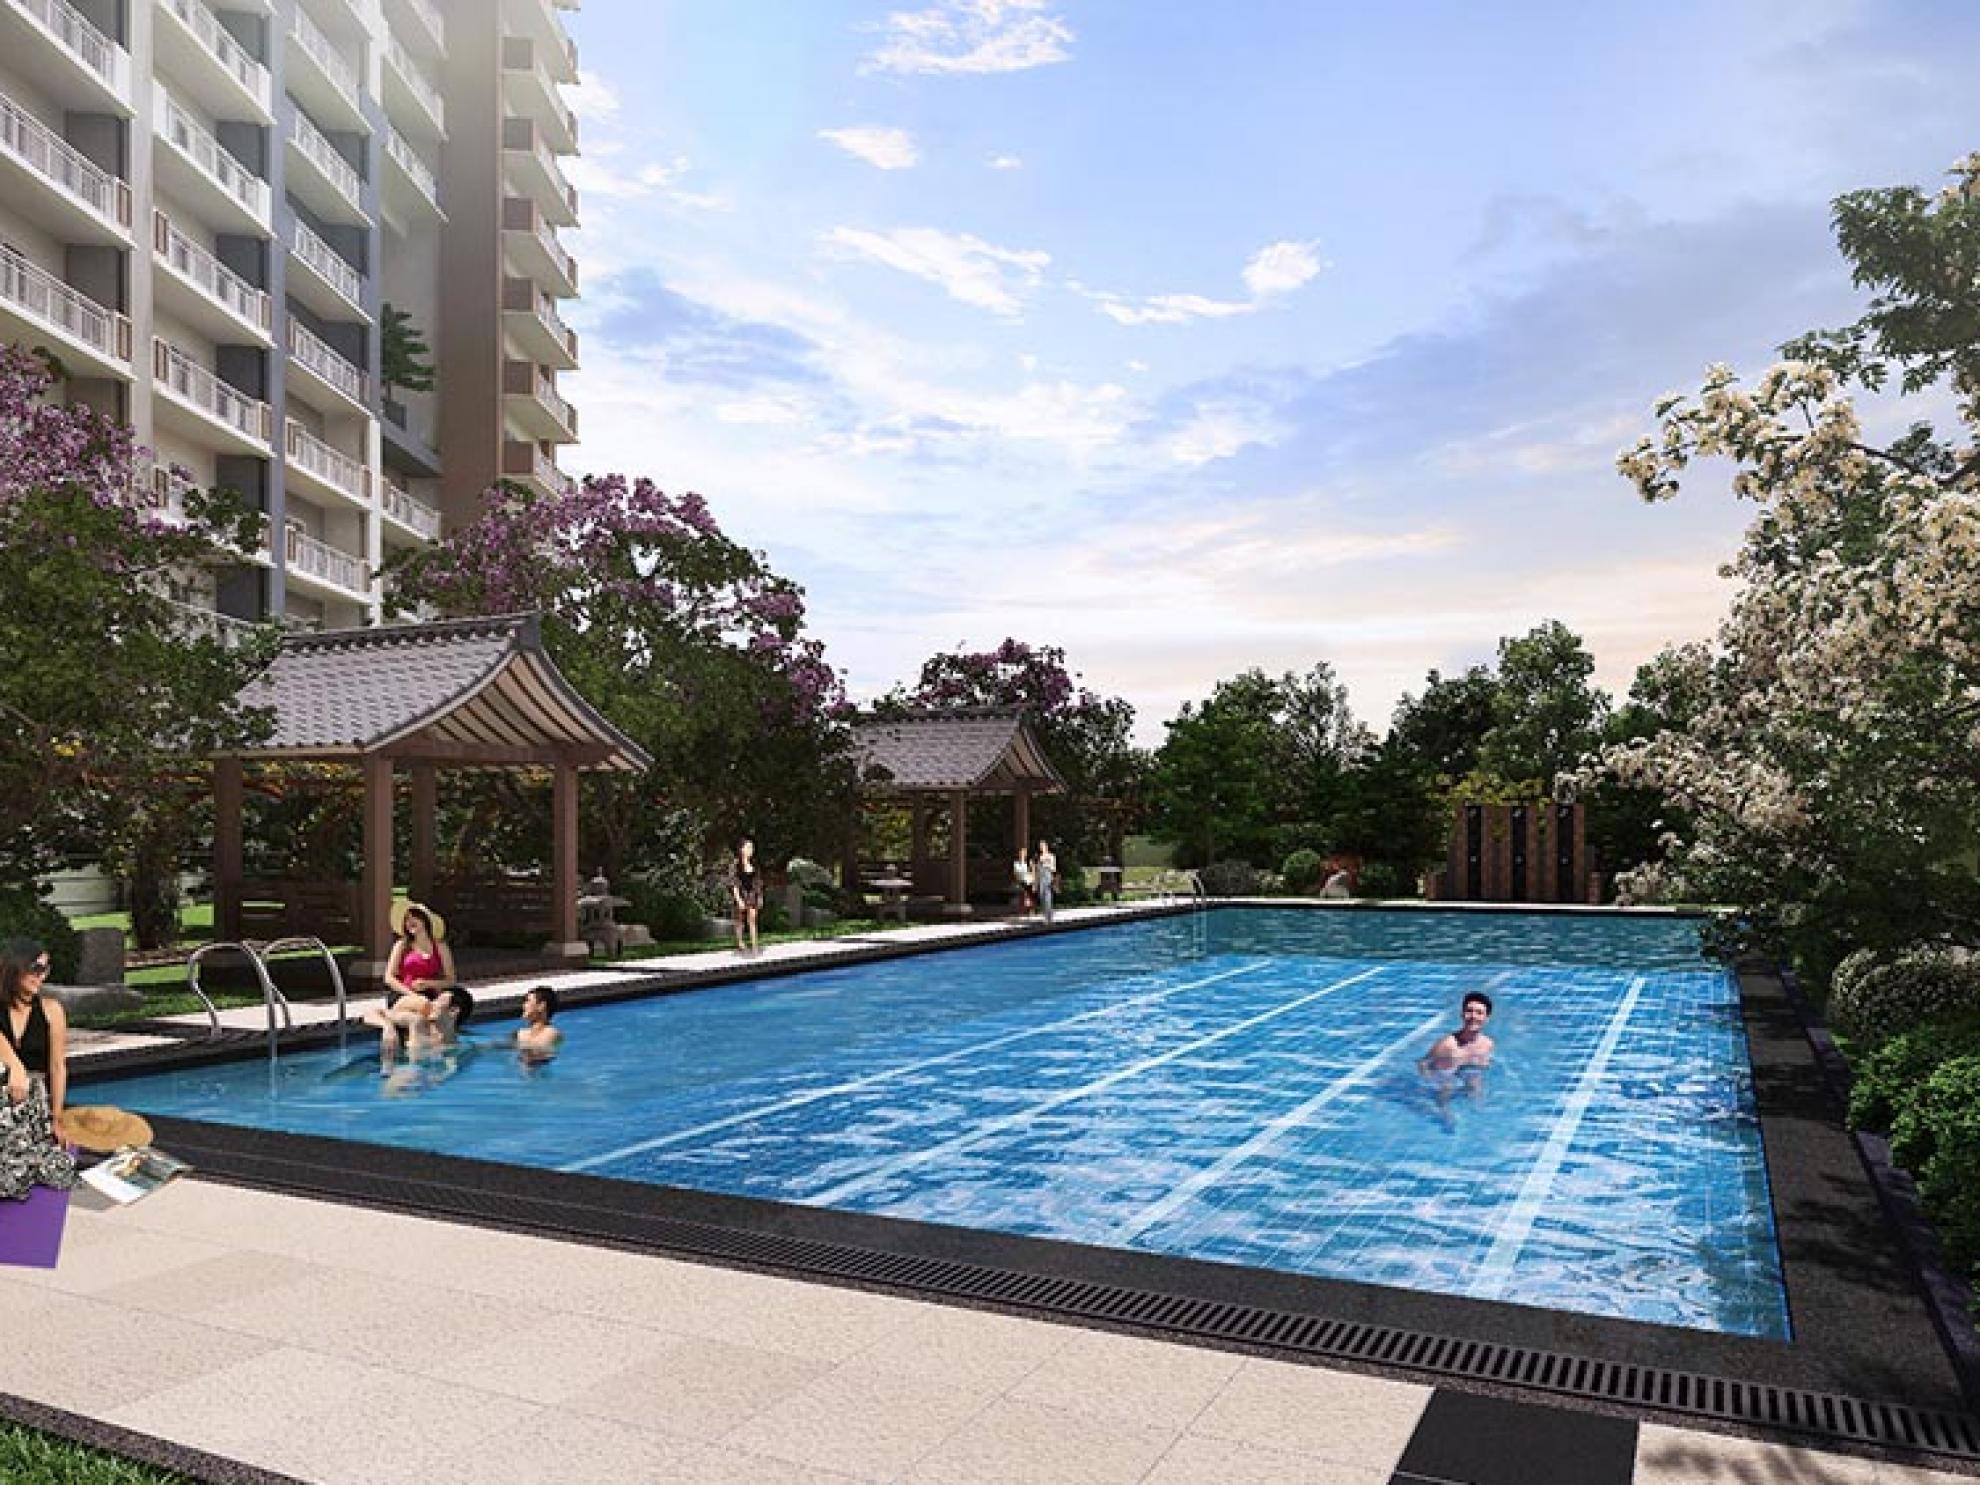 Lap pool of DMCI Homes' Kai Garden Residences